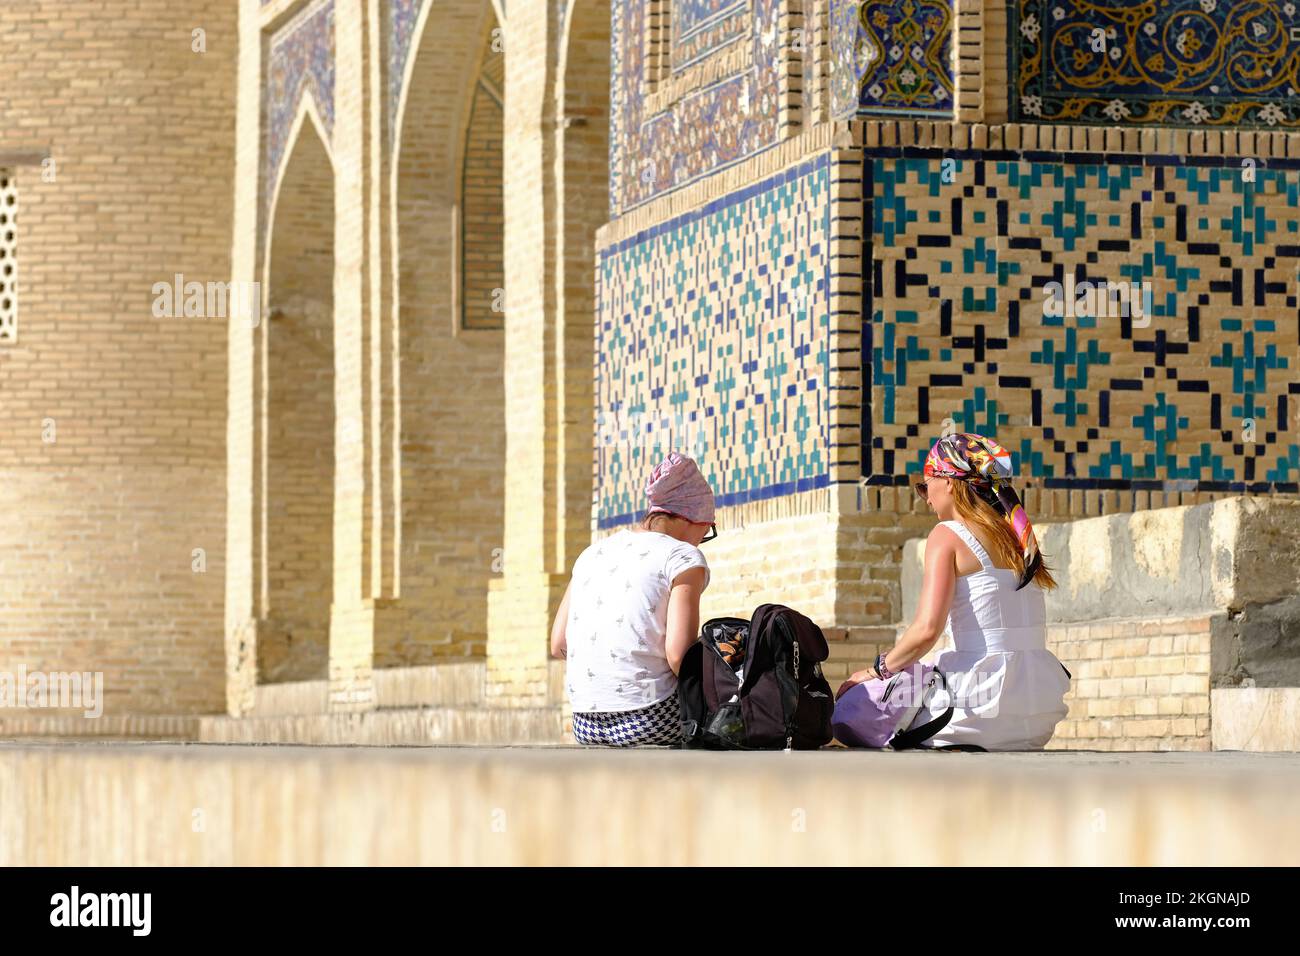 Bukhara Ouzbékistan deux visiteurs se reposent à l'extérieur de la Mir-i Arab Madrasa et de sa décoration de tuiles ornementées - août 2022 Banque D'Images